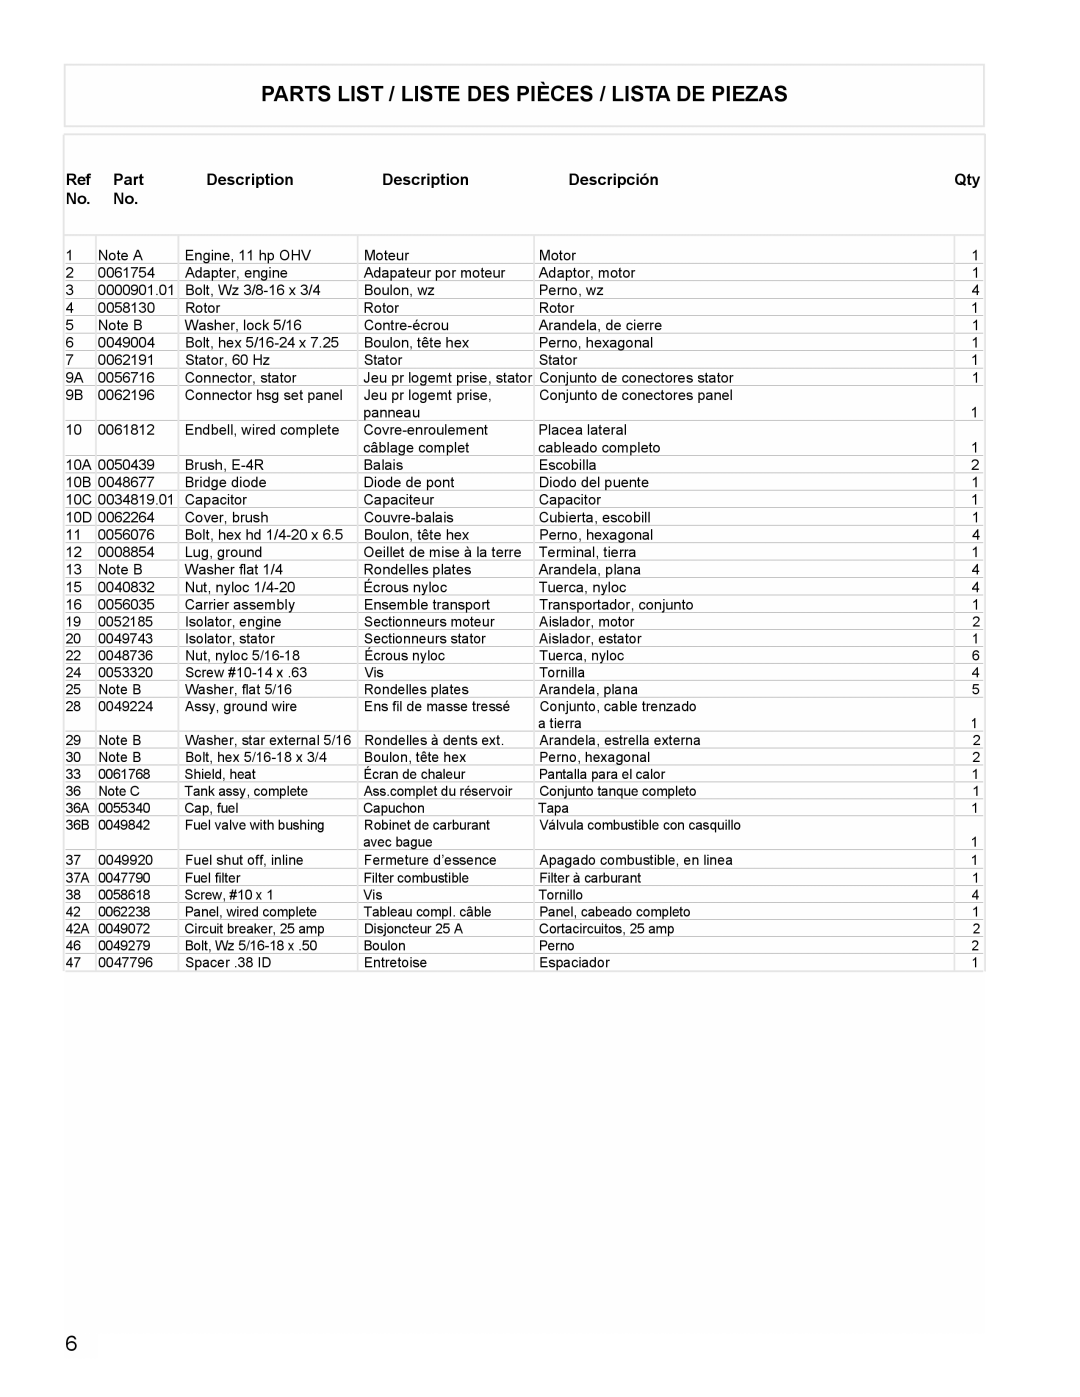 Powermate PM0525500.01 manual Parts List / Liste Des Pièces / Lista De Piezas, Description, Descripción 